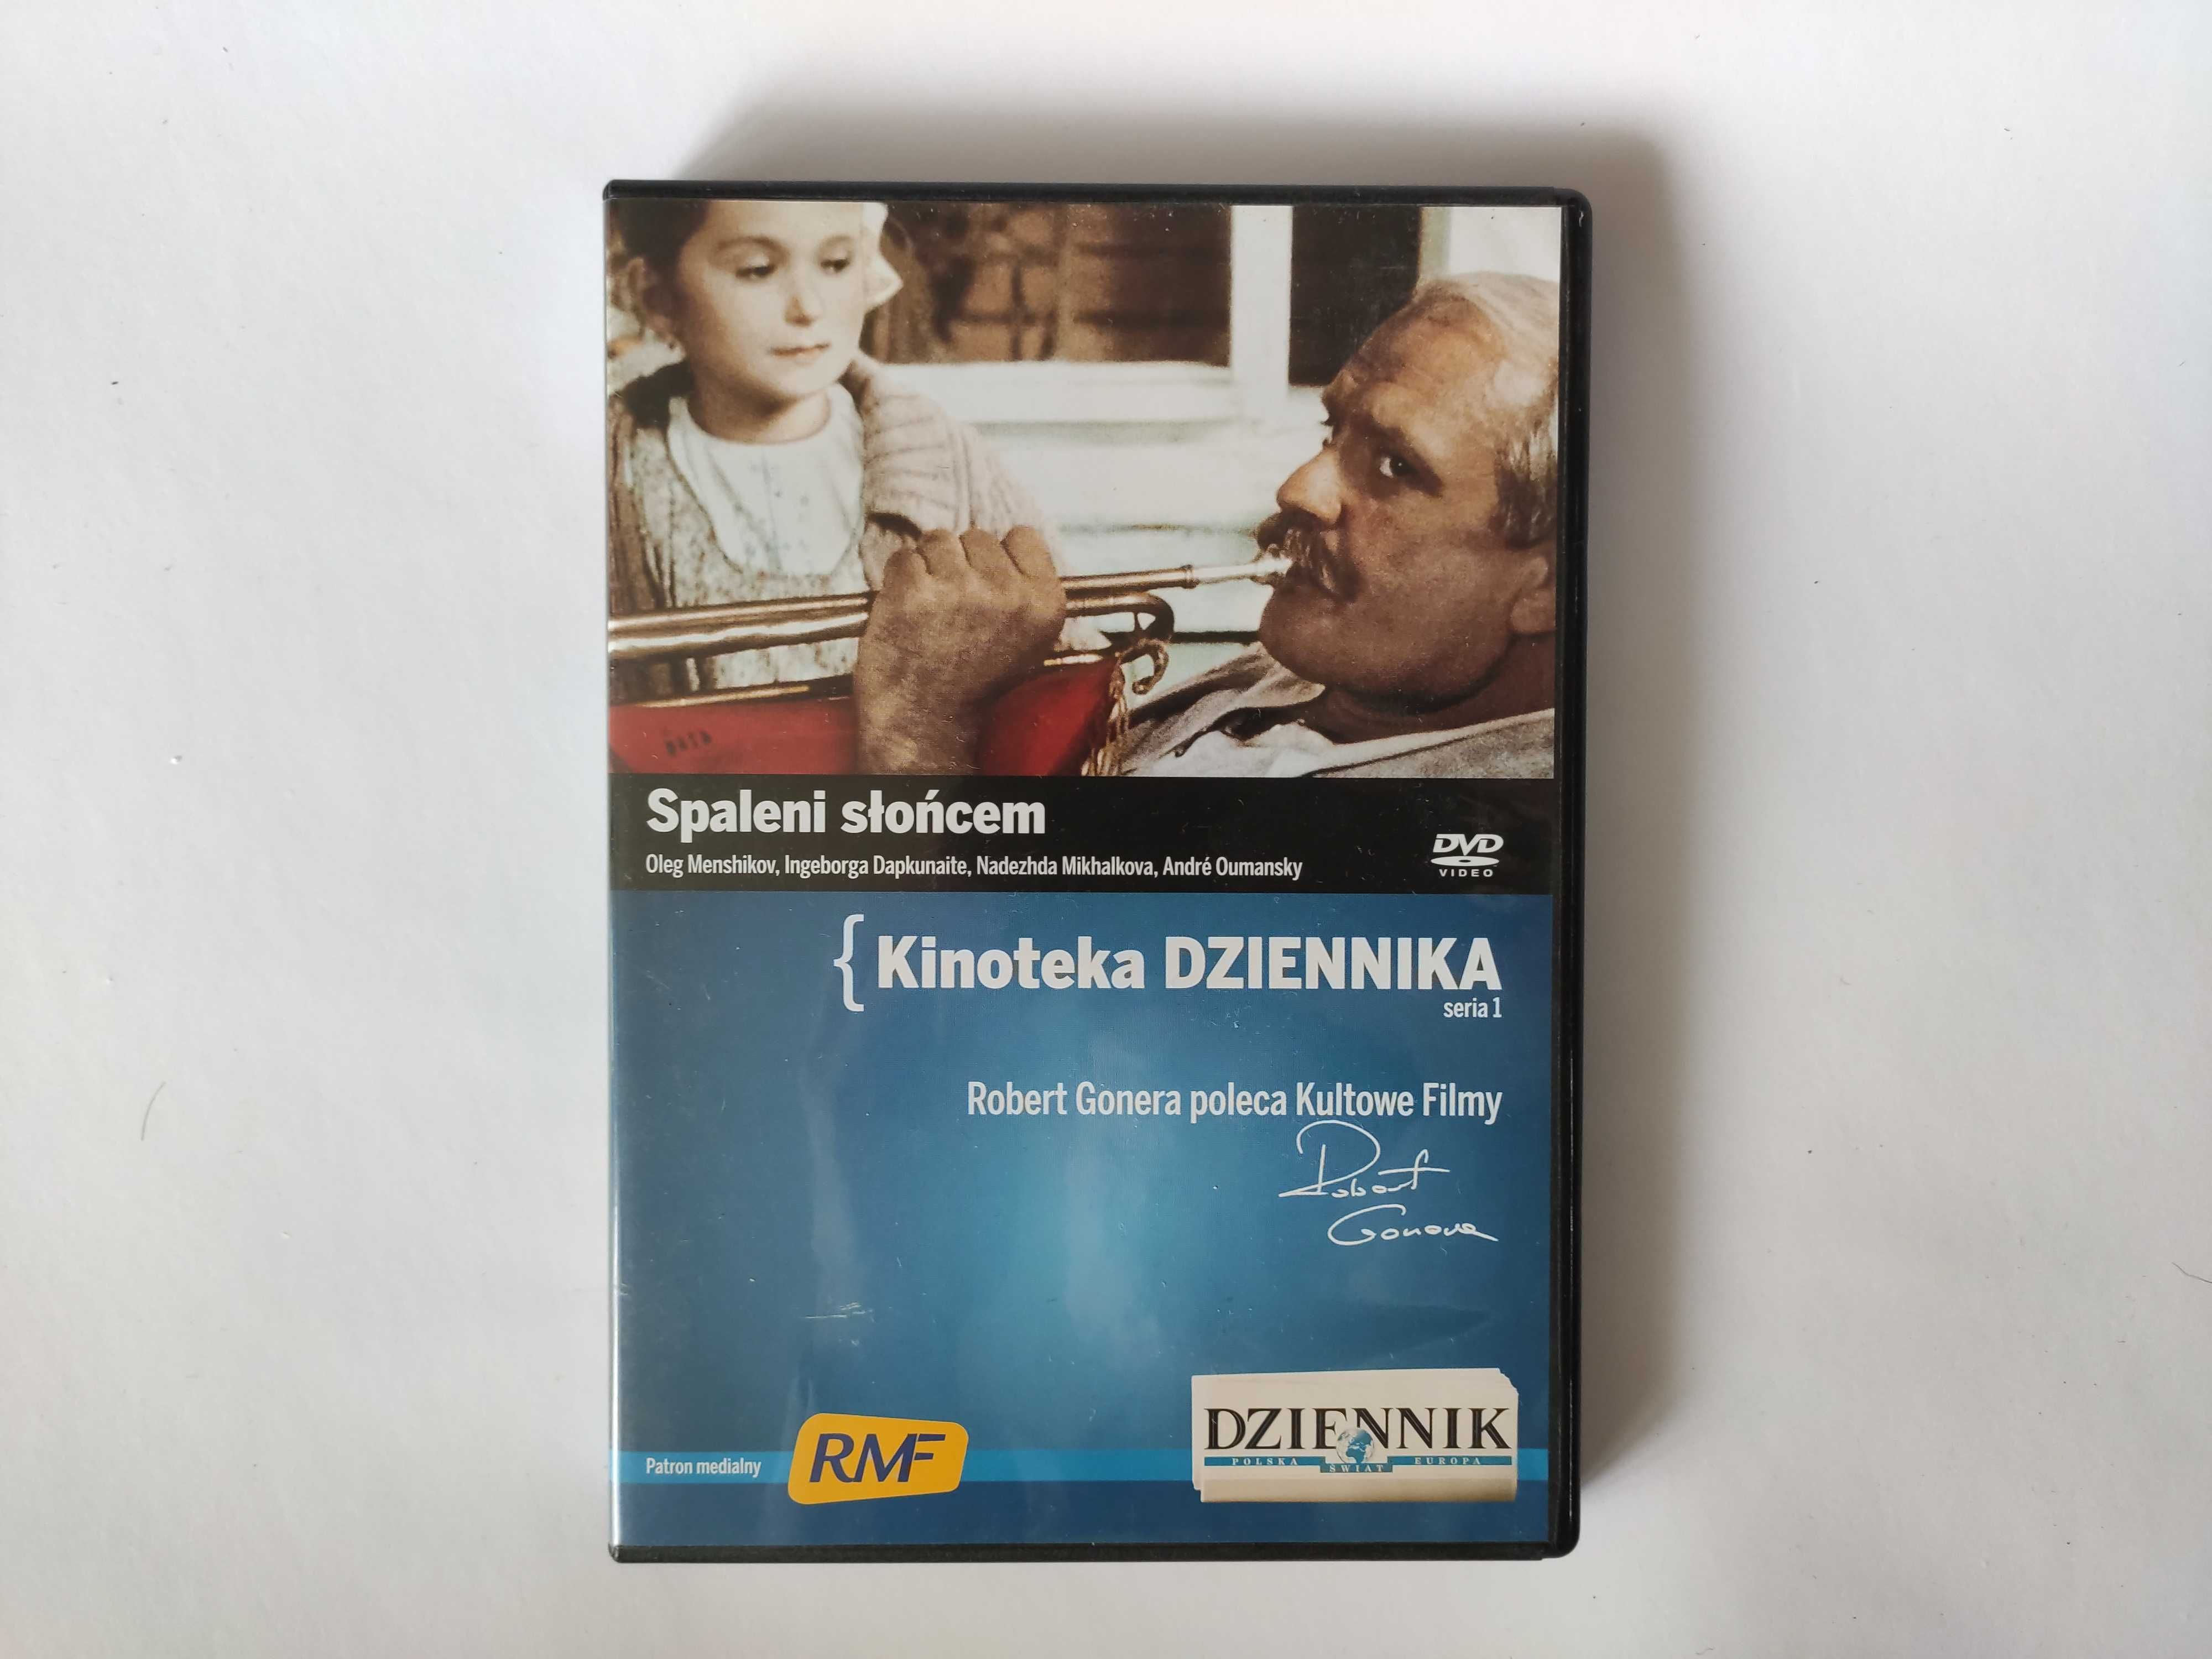 Film DVD "Spaleni słońcem" N. Michałkow